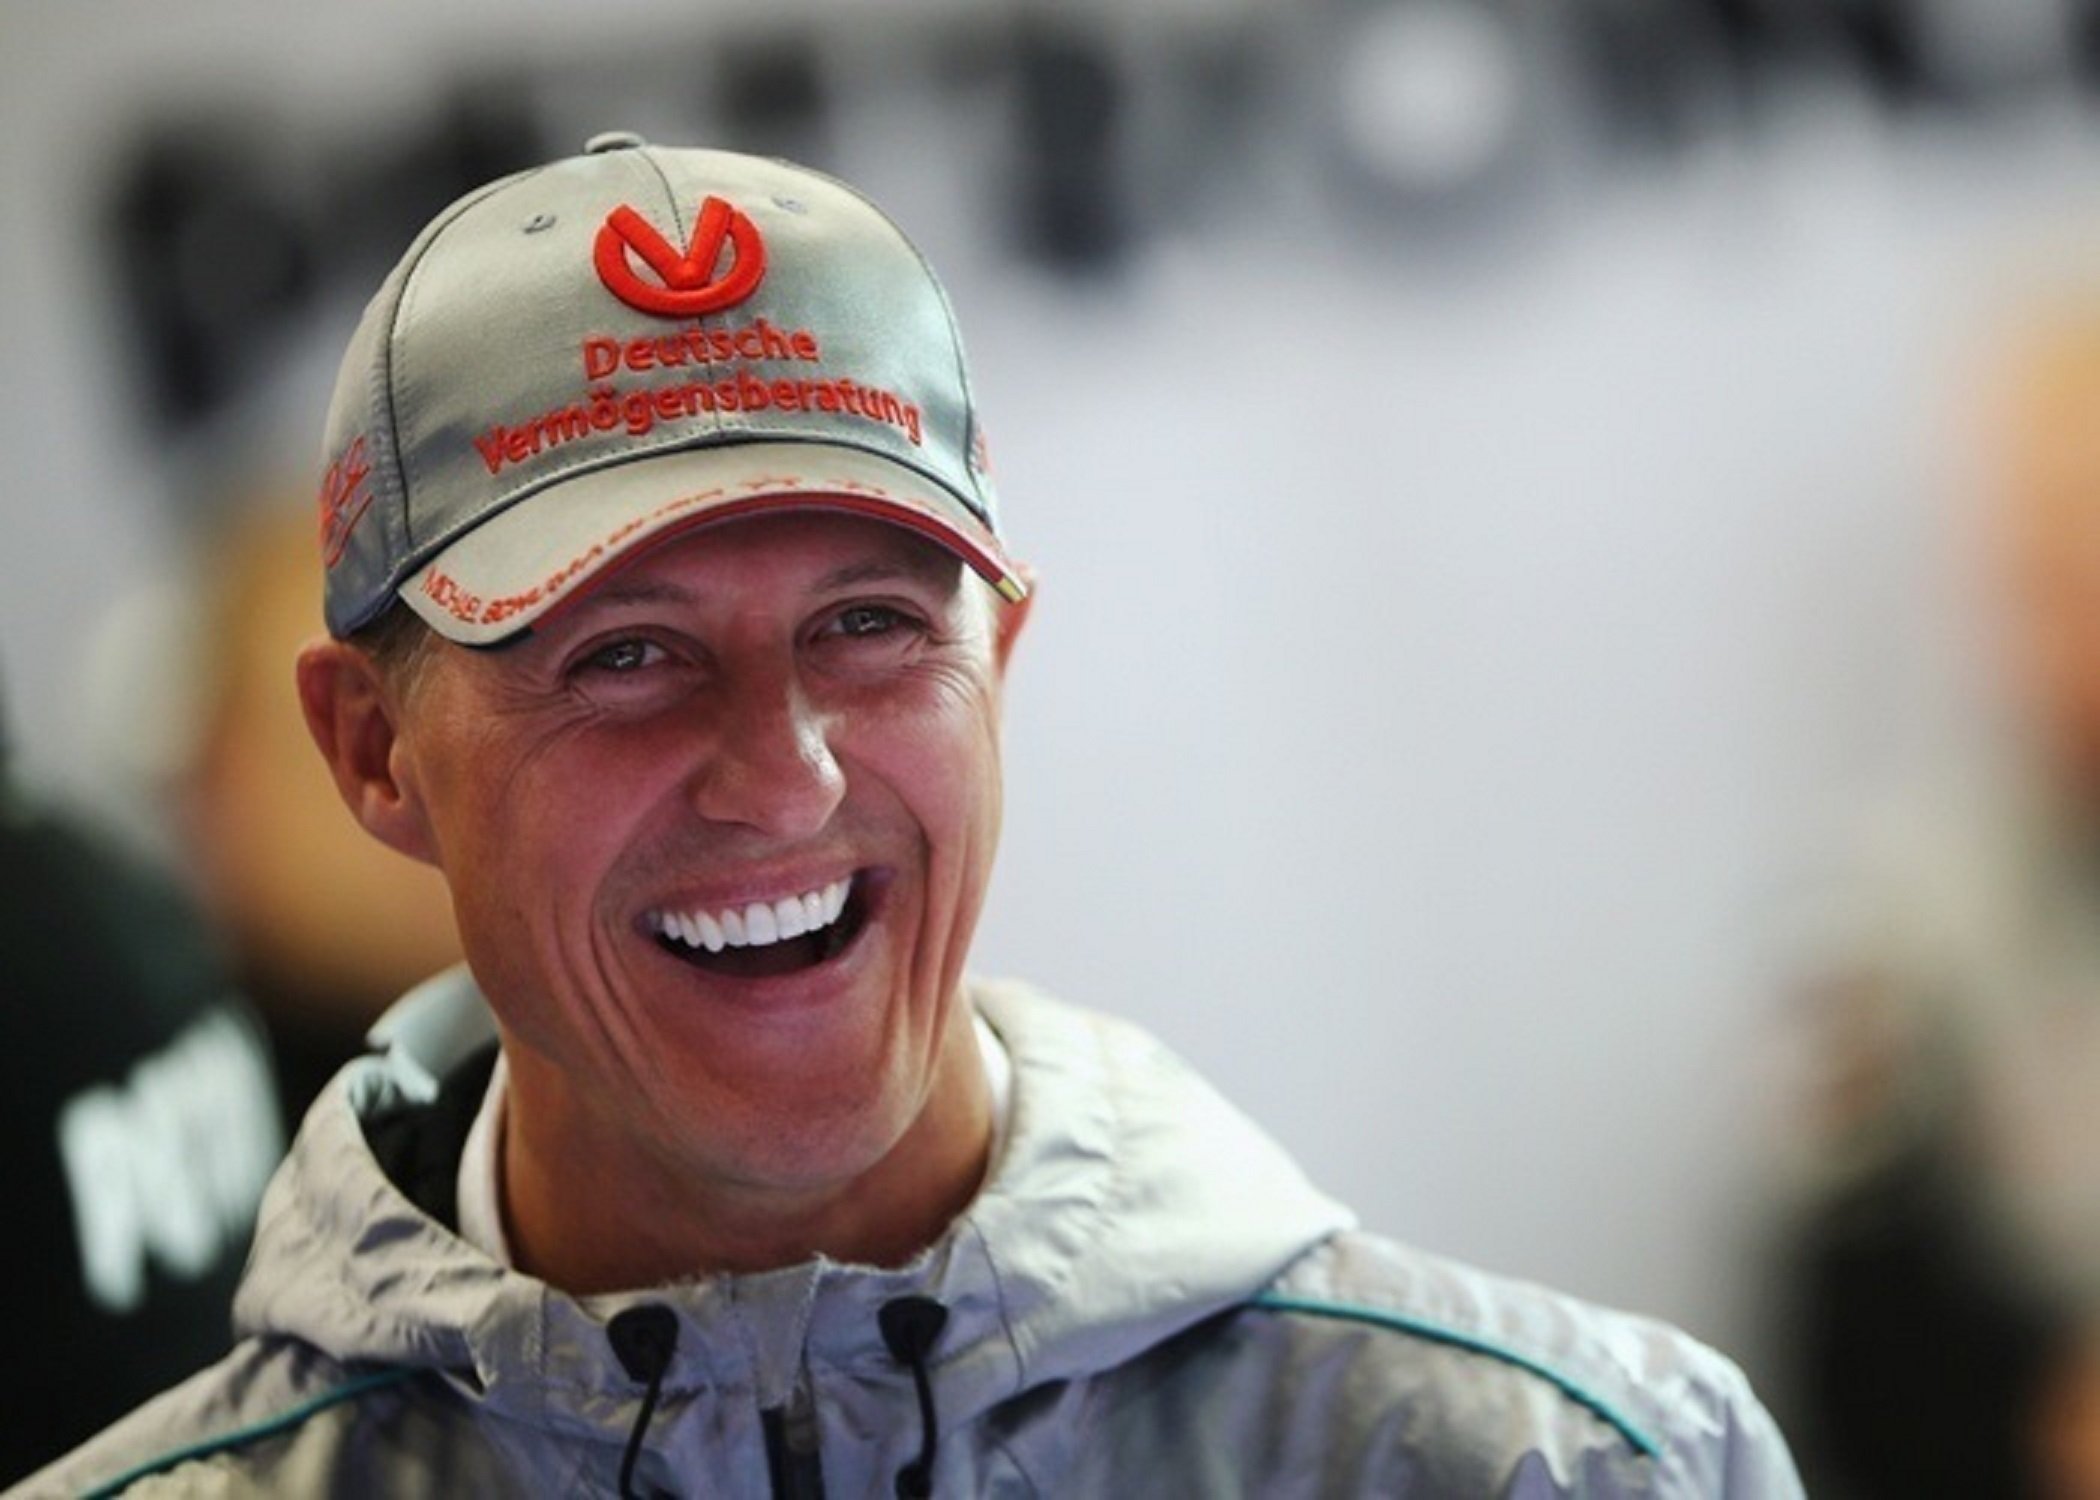 Michael Schumacher, pitjor, no hi ha cap esperança